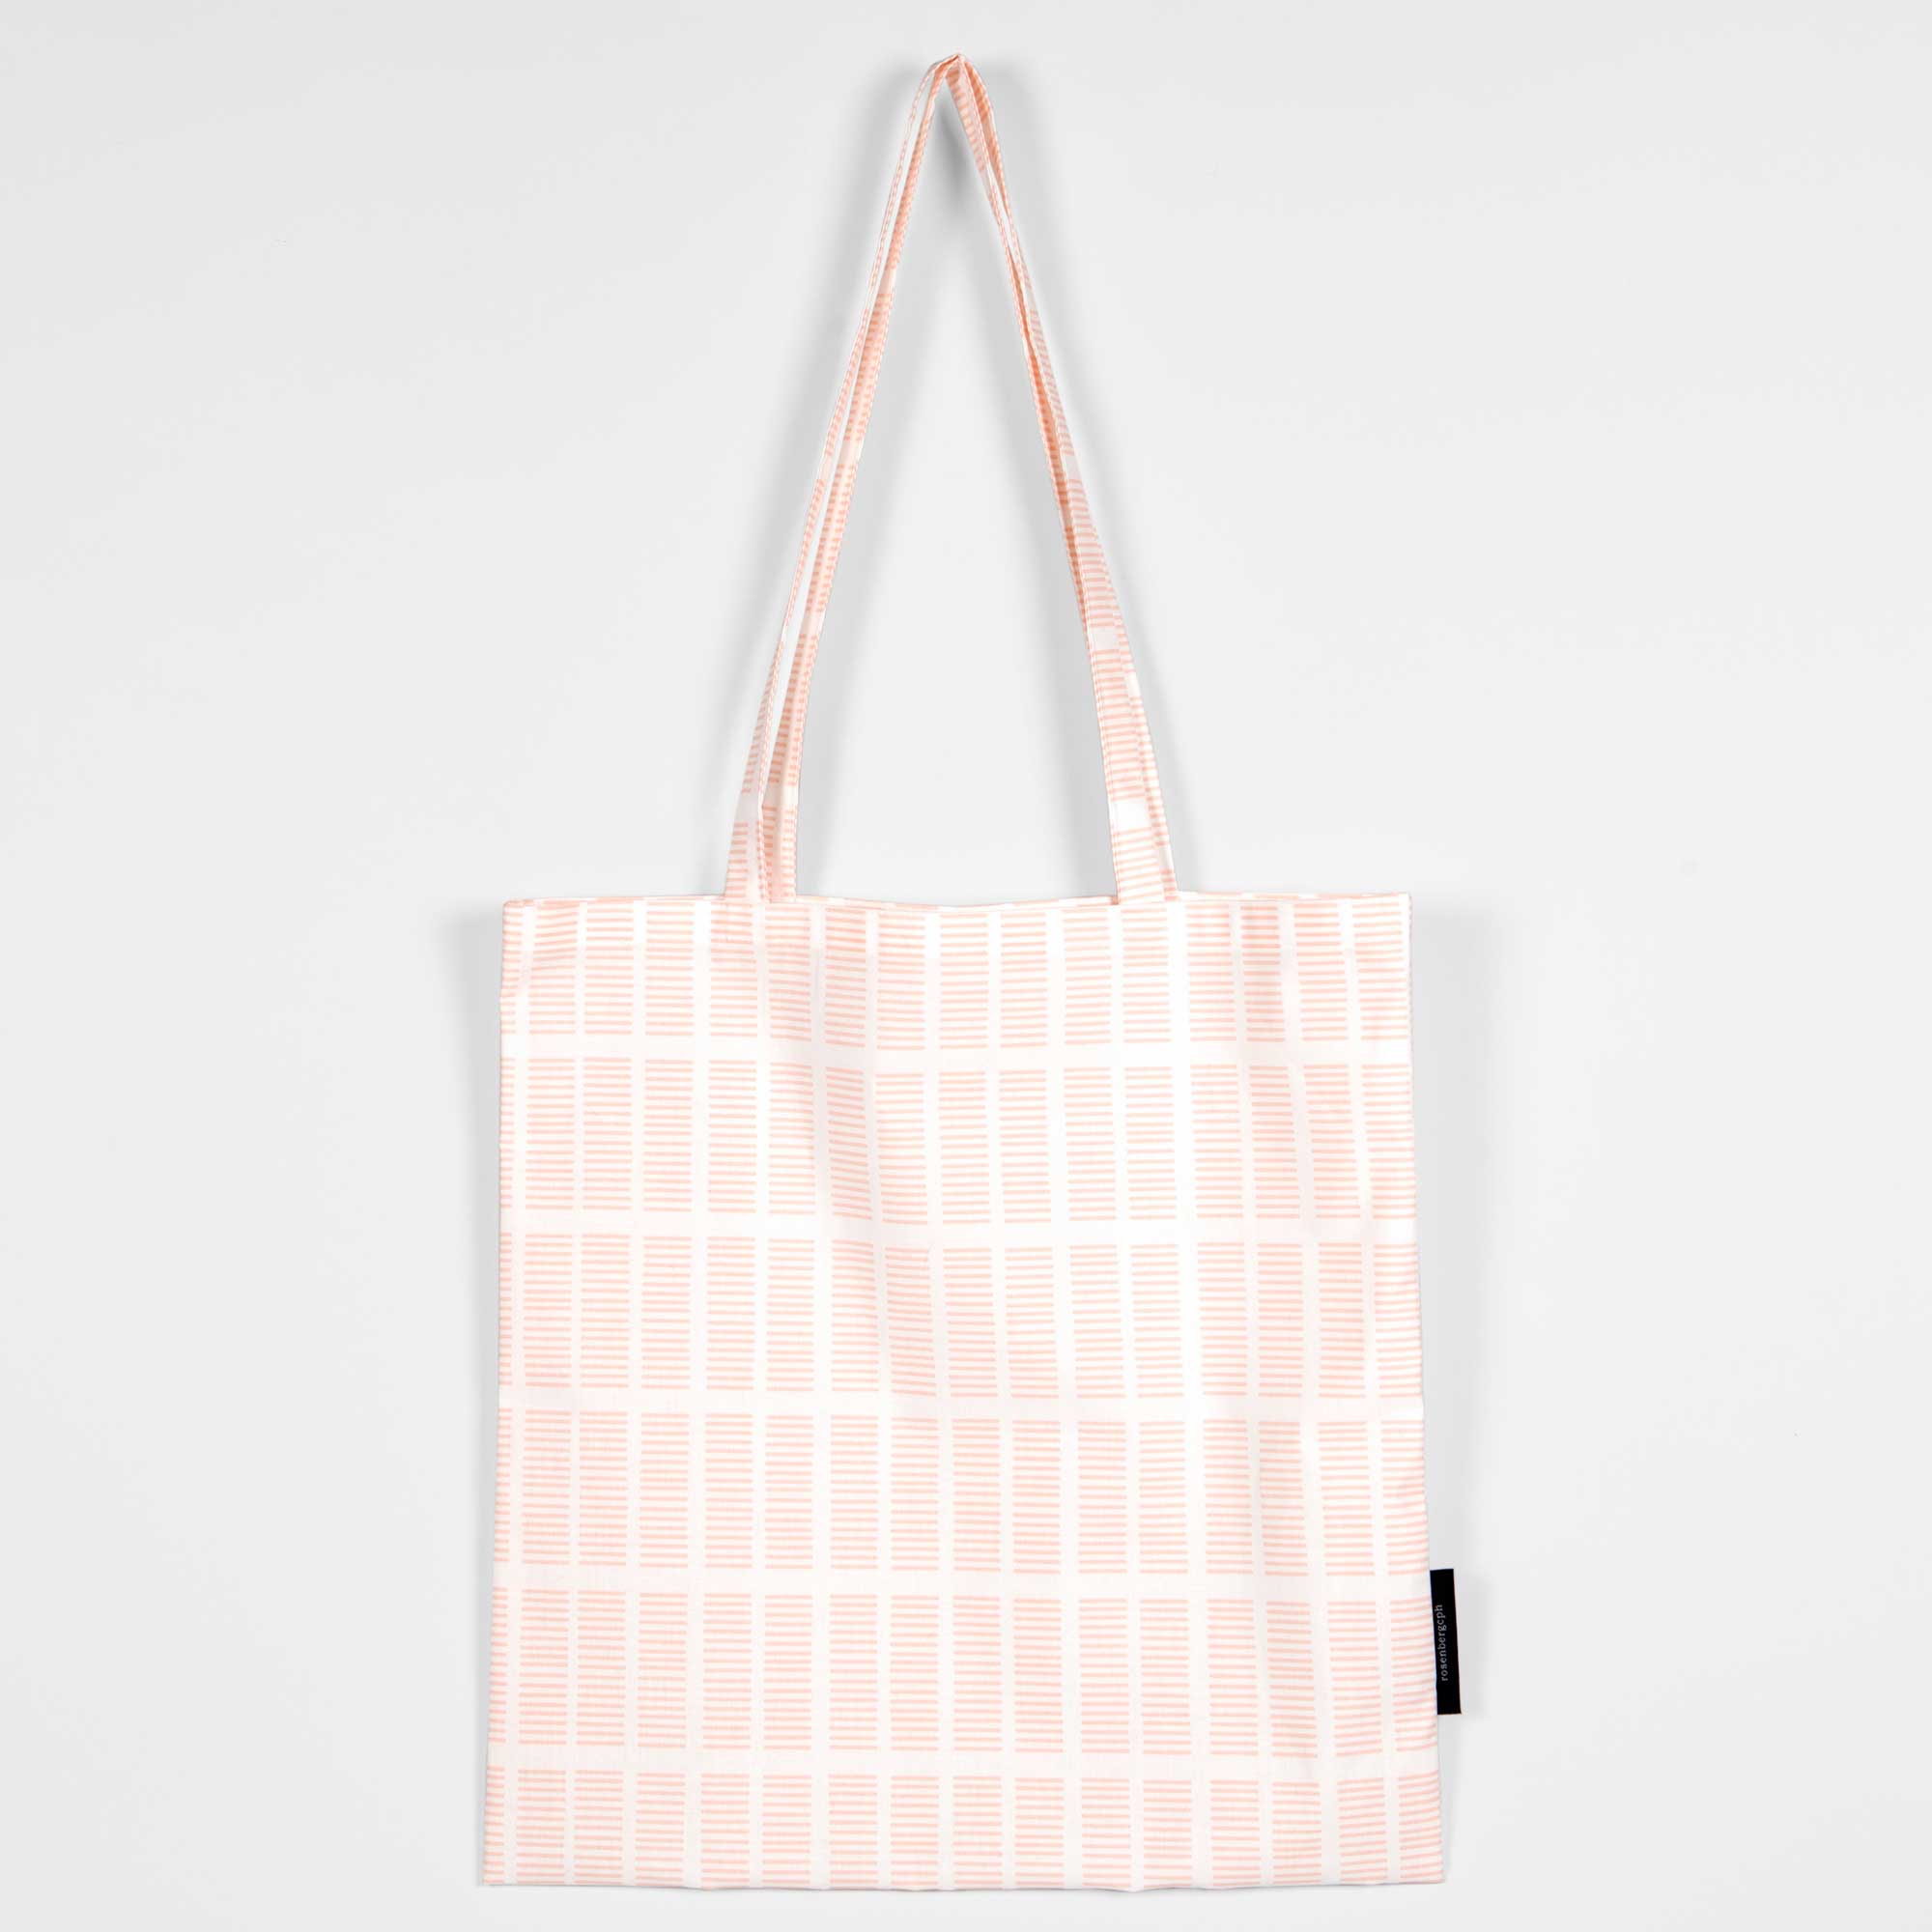 Shopping bag, Tile pale rose, organic cotton